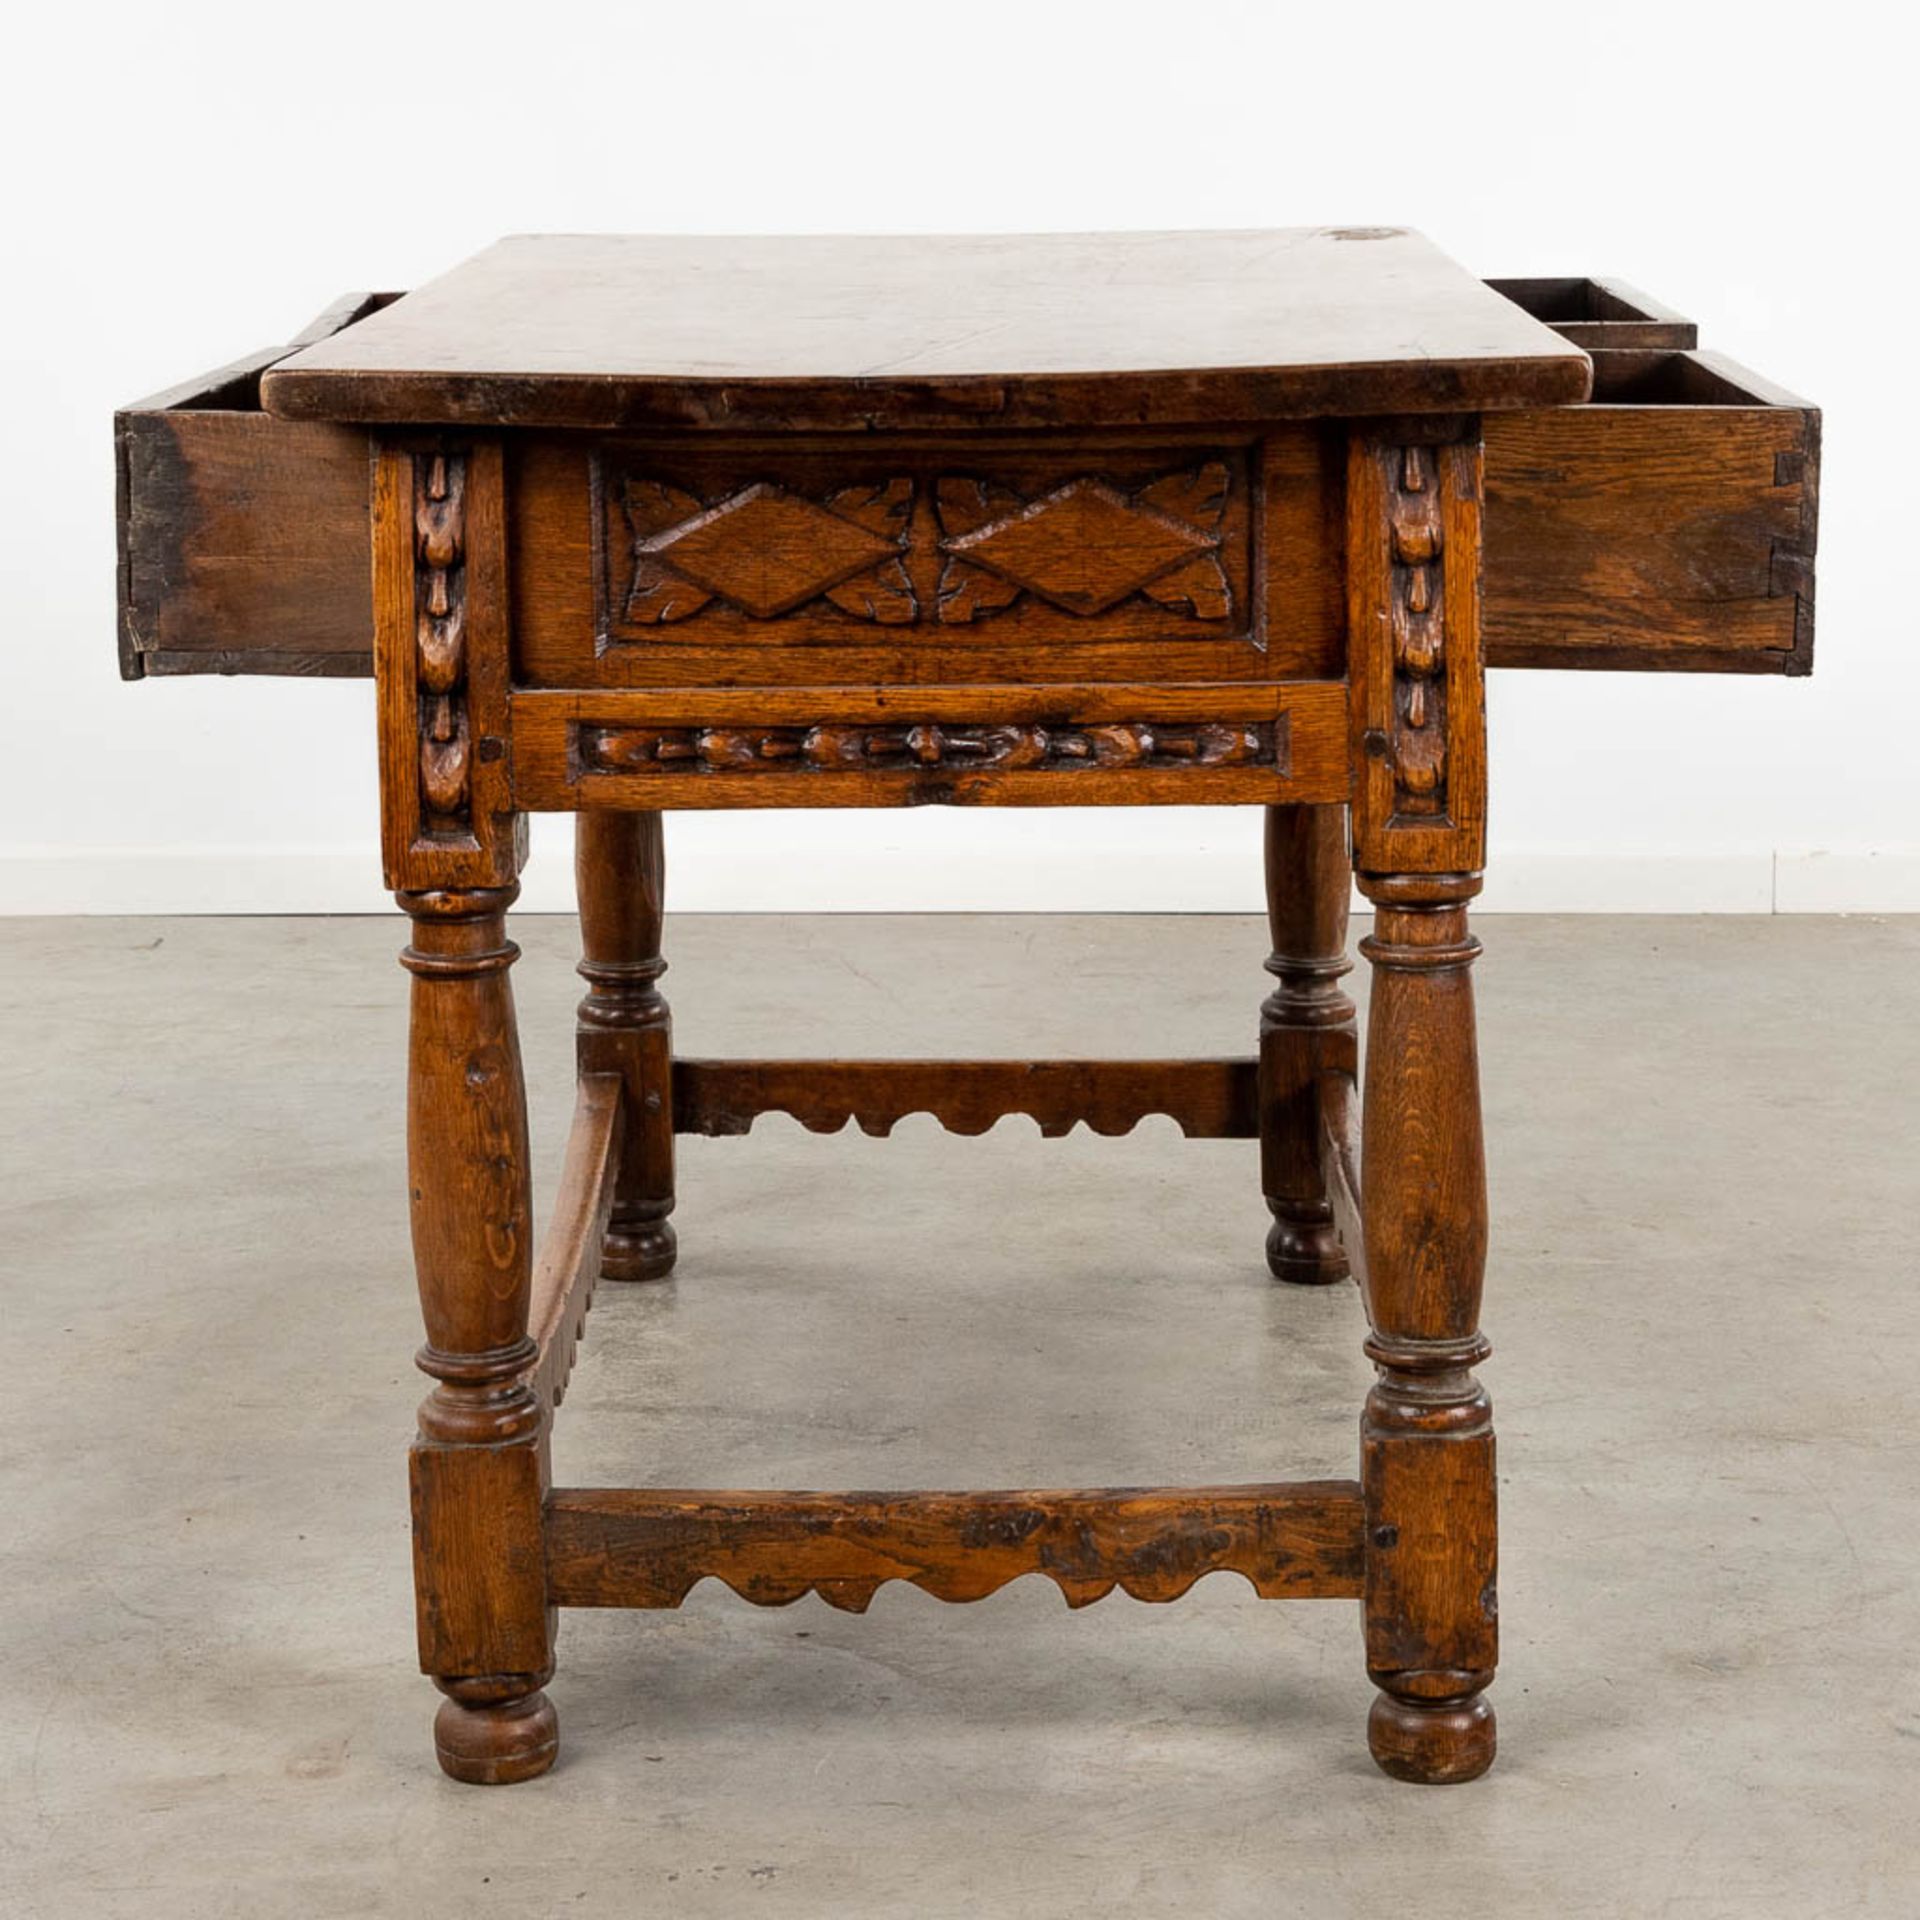 An antique "Table De Milieu", sculptured wood. Spain, 18th C. (D:72 x W:127 x H:82 cm) - Image 6 of 13